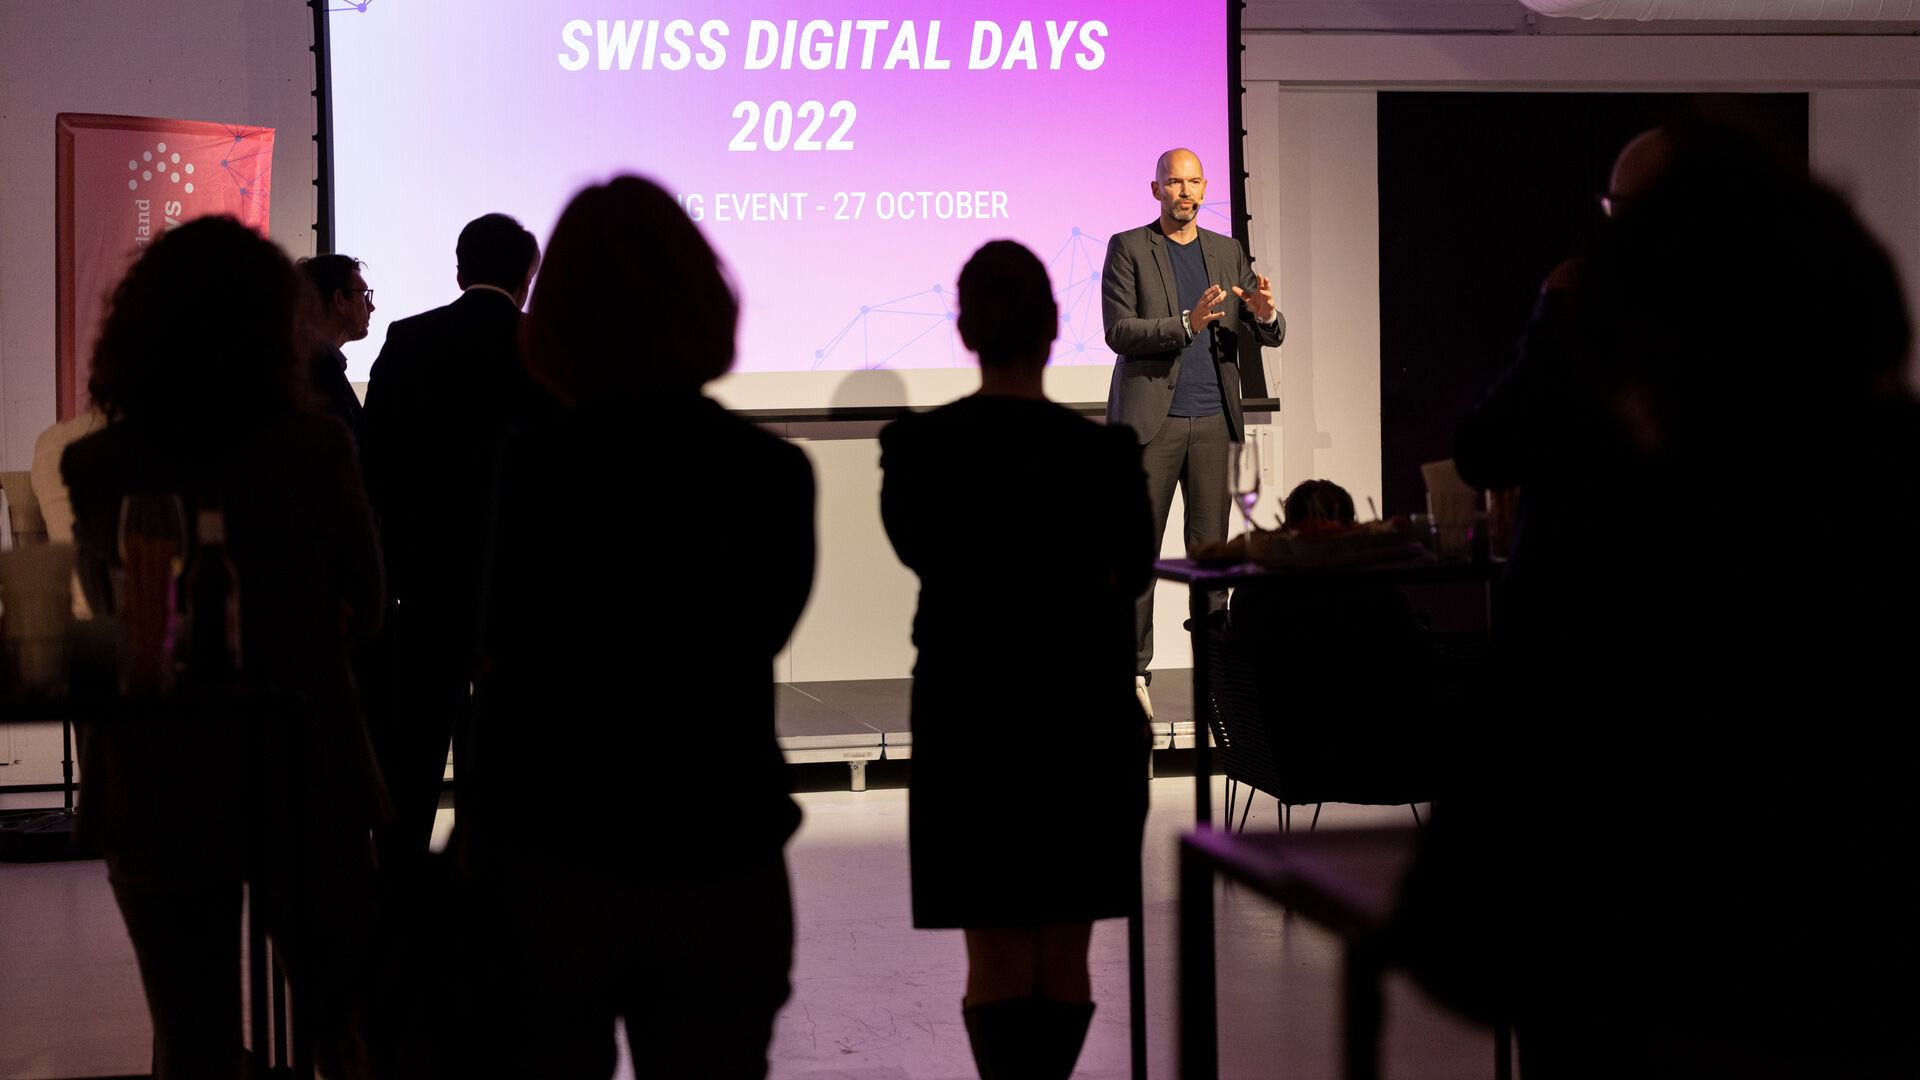 Swiss Digital Days: η εκδήλωση λήξης των "Swiss Digital Days" 2022 στο Freiruum στο Zug (Zug) στις 27 Οκτωβρίου